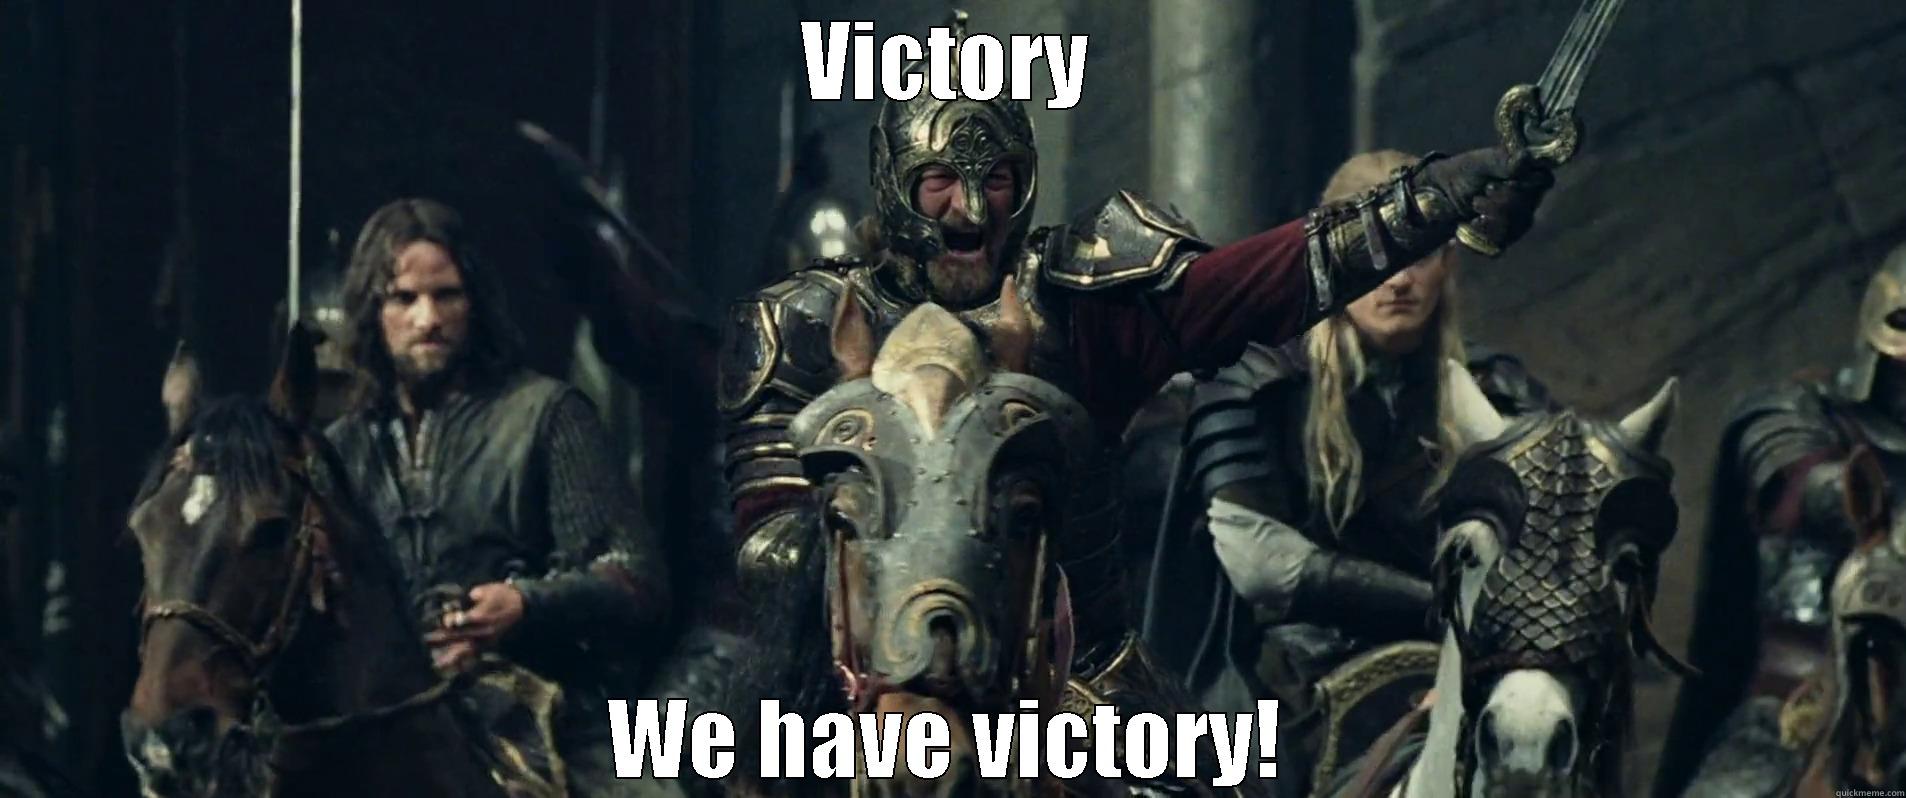 Victory, we have victory! - VICTORY WE HAVE VICTORY! Misc